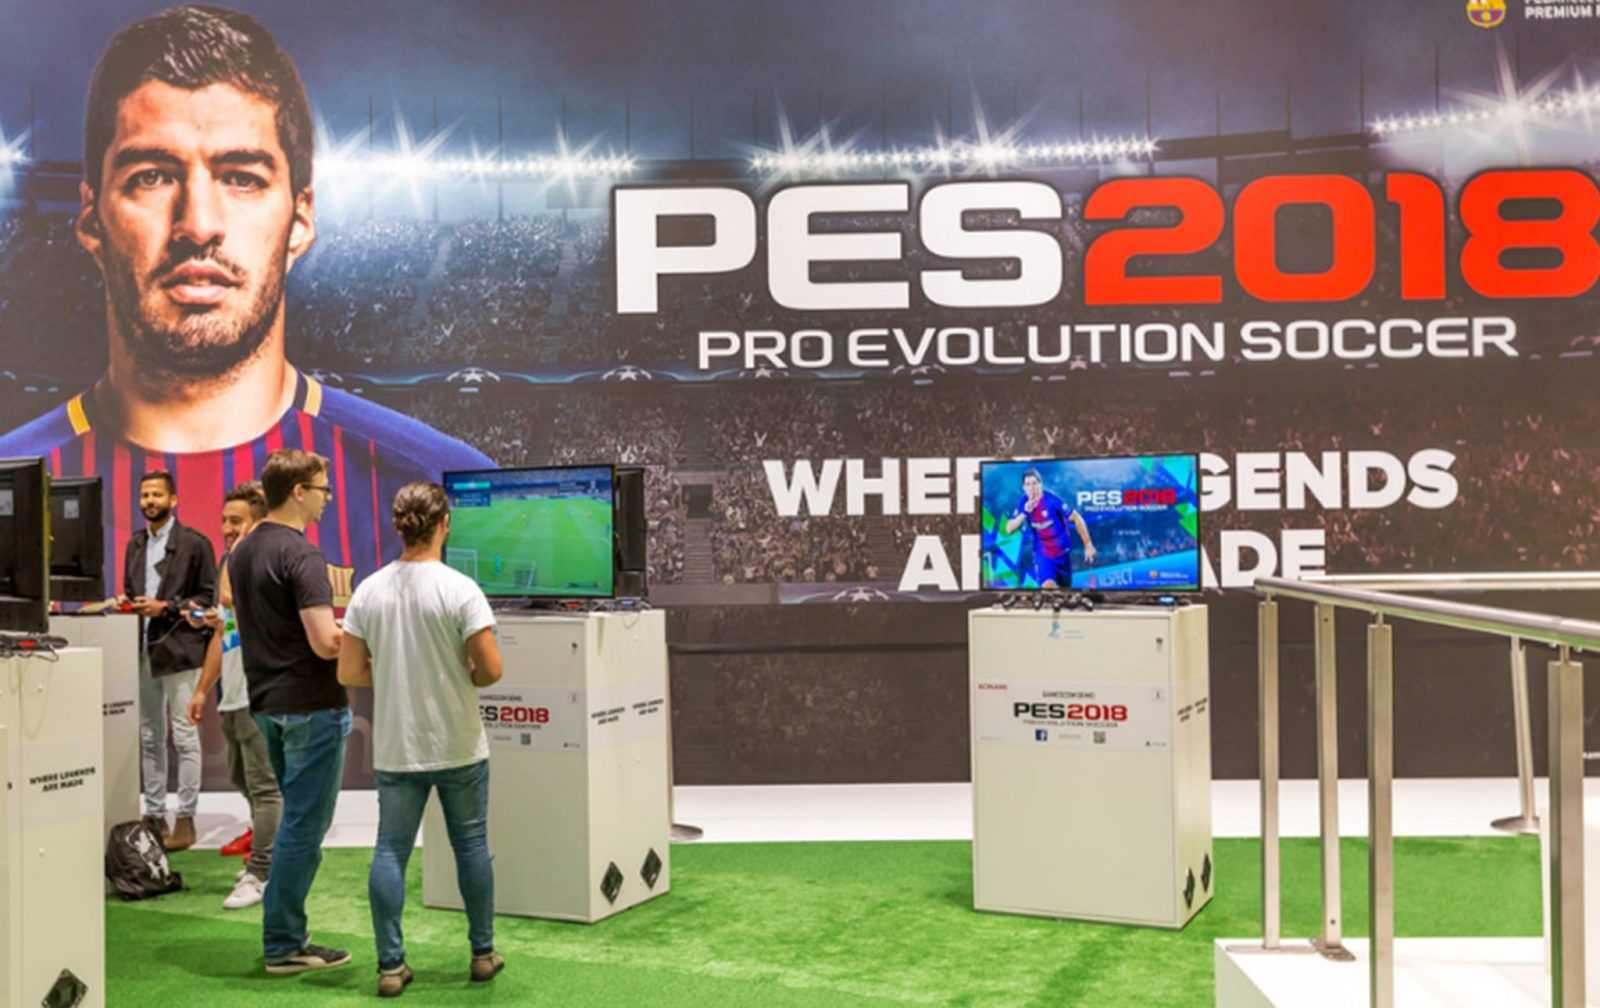 Pro Evolution Soccer 2018 Free Download